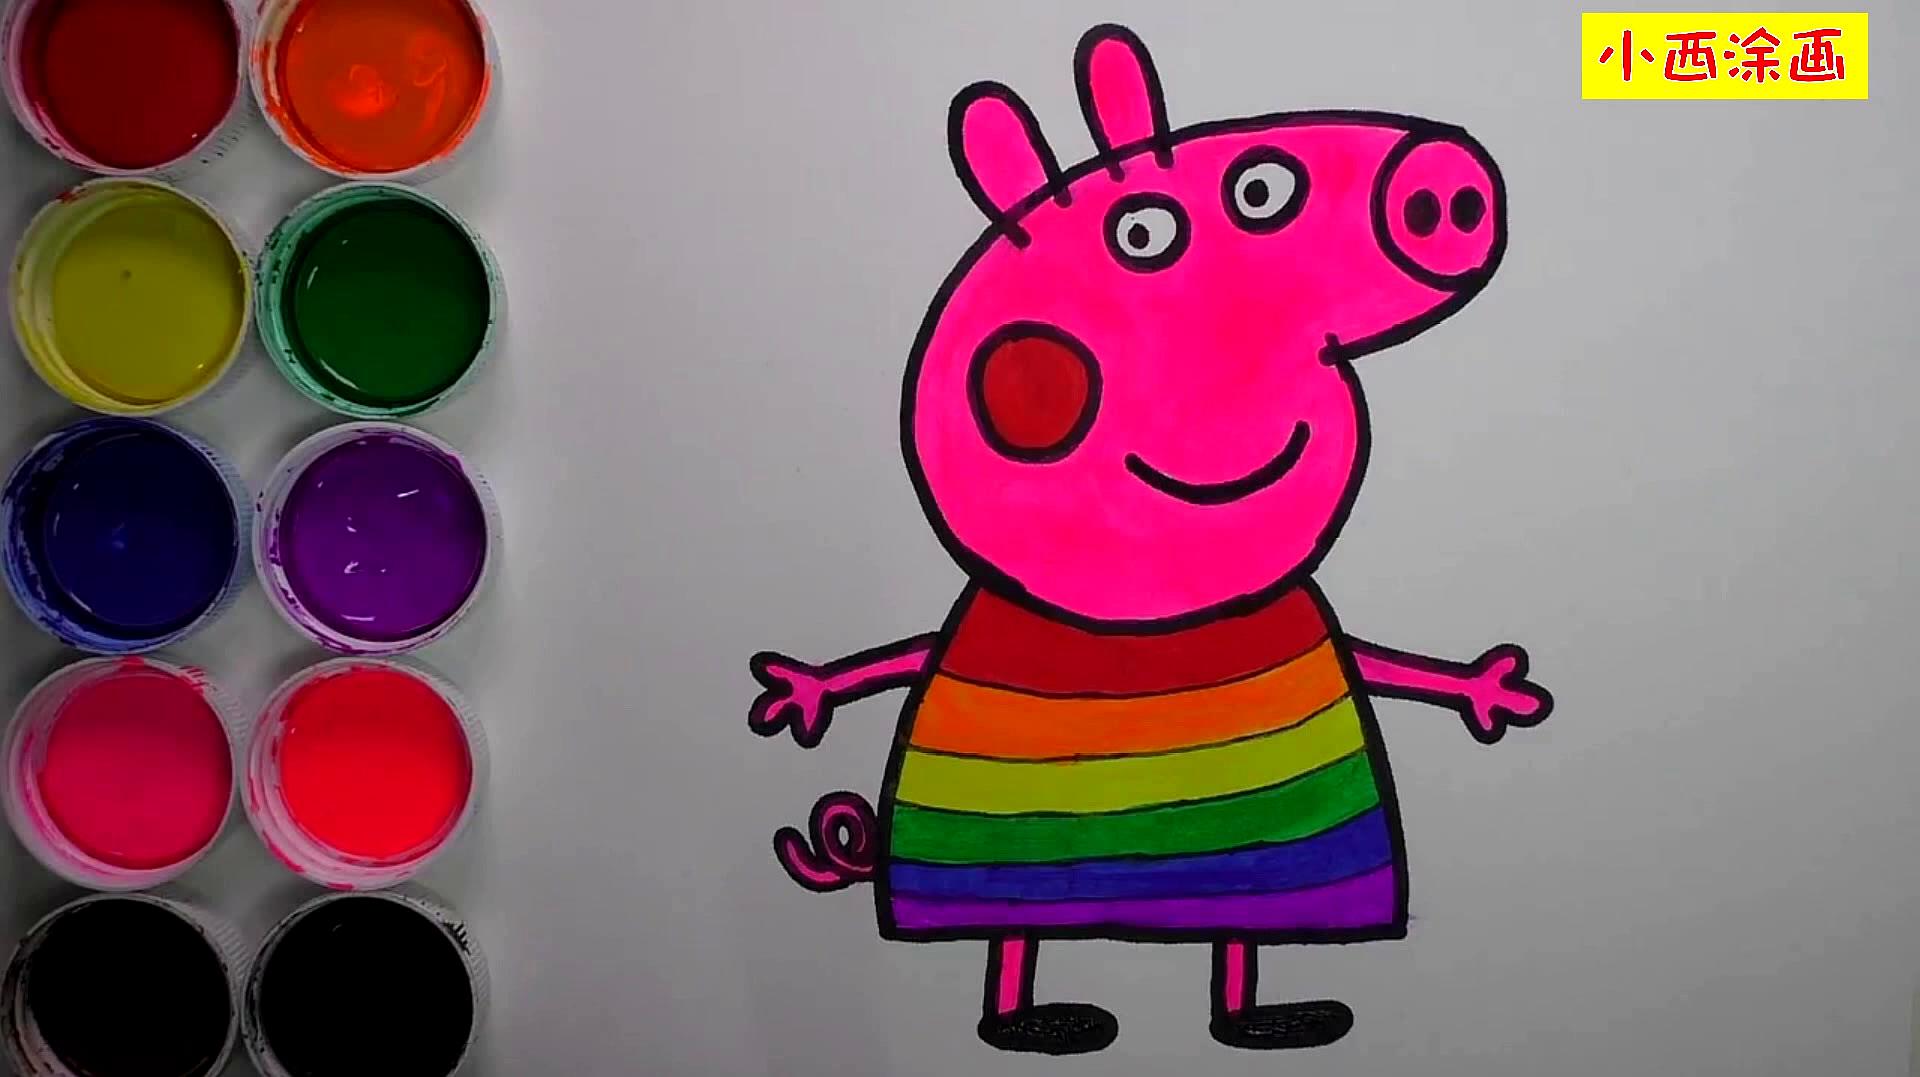 亲子趣味创意简笔画,亲子画粉红猪小妹小猪佩奇并涂色,色彩认知